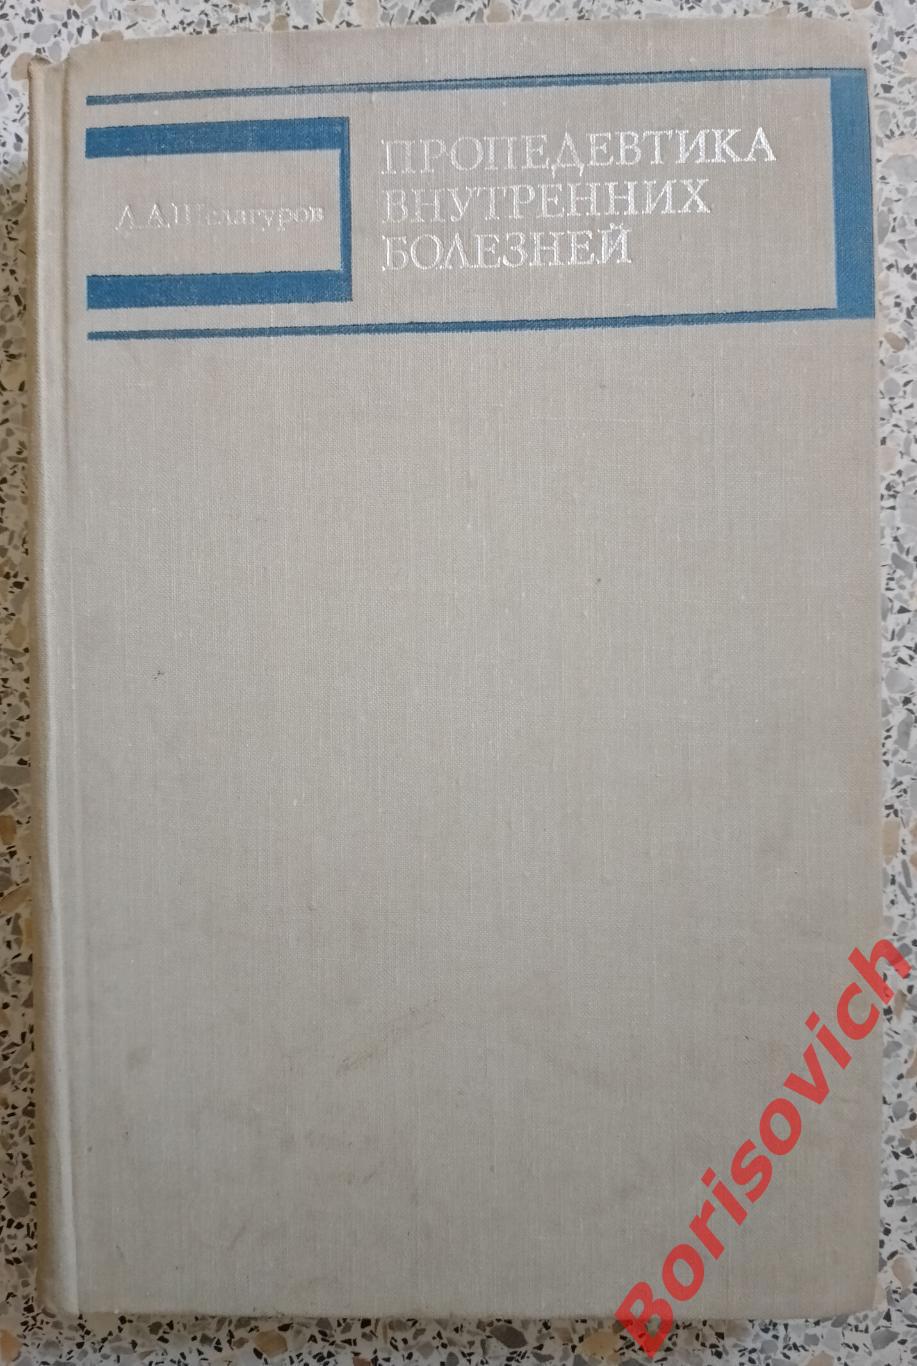 А. А. Шелагуров ПРОПЕДЕВТИКА ВНУТРЕННИХ БОЛЕЗНЕЙ 1975 г 479 страниц